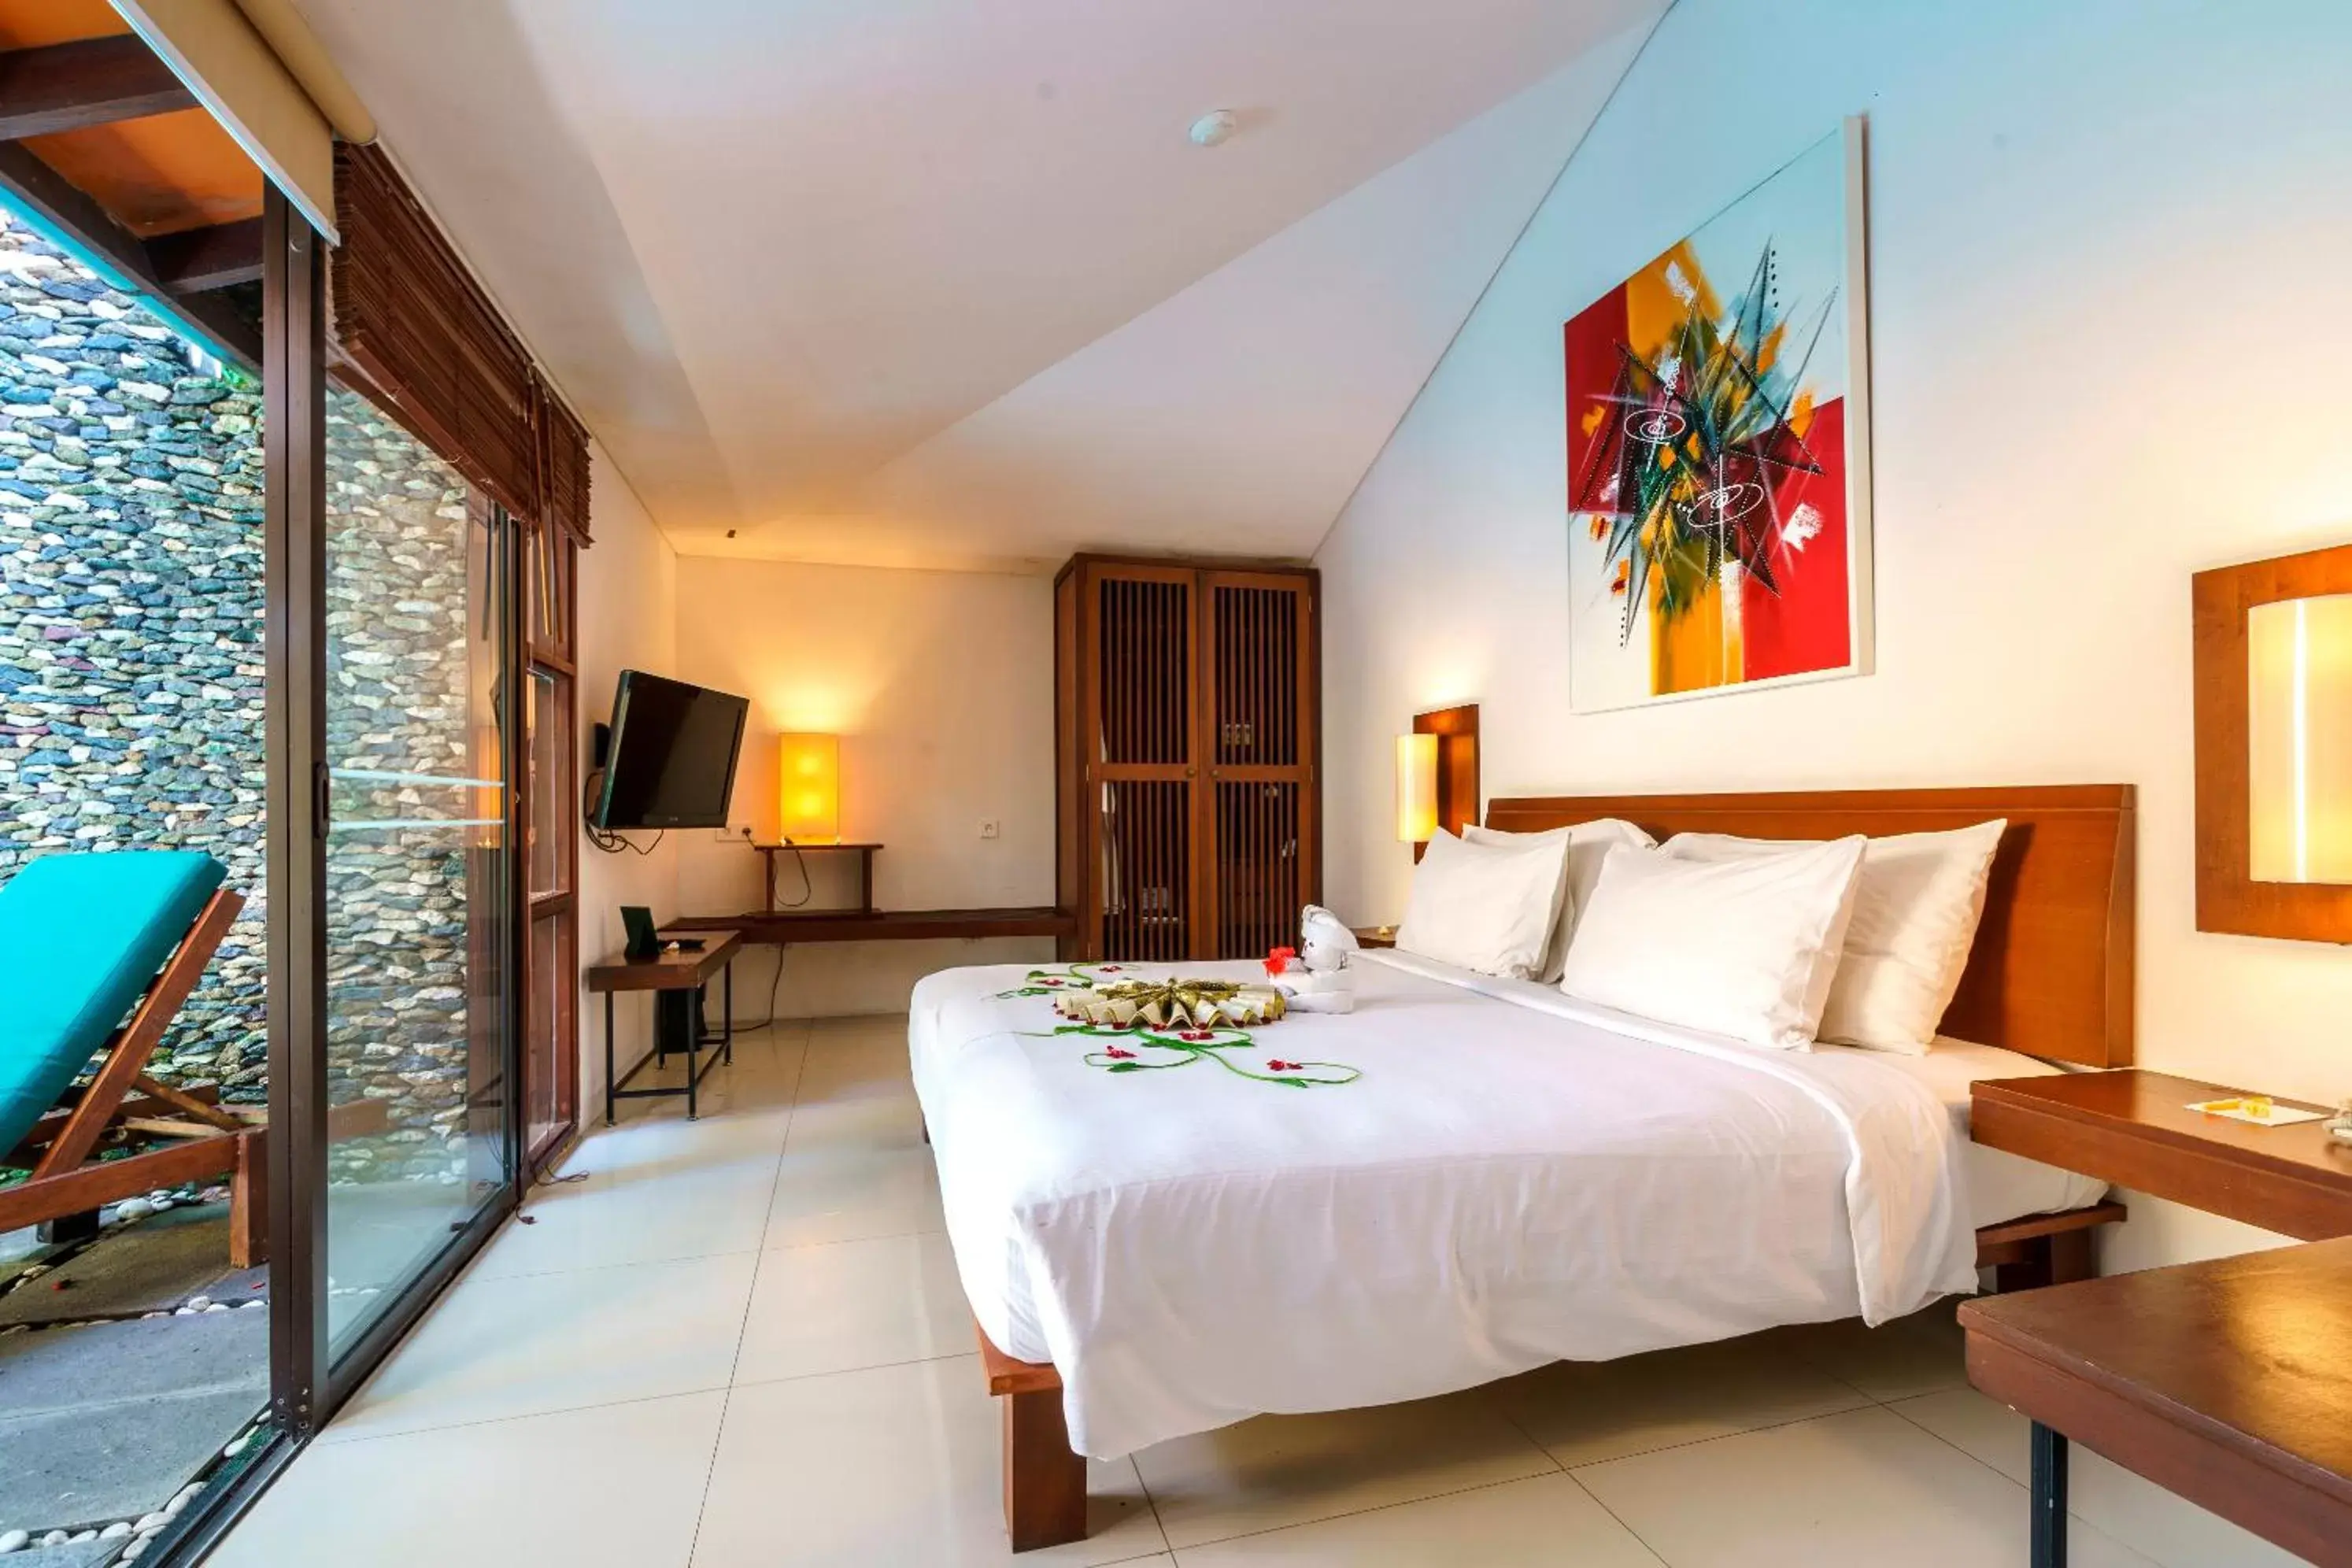 Bedroom in Ubud Green Resort Villas Powered by Archipelago